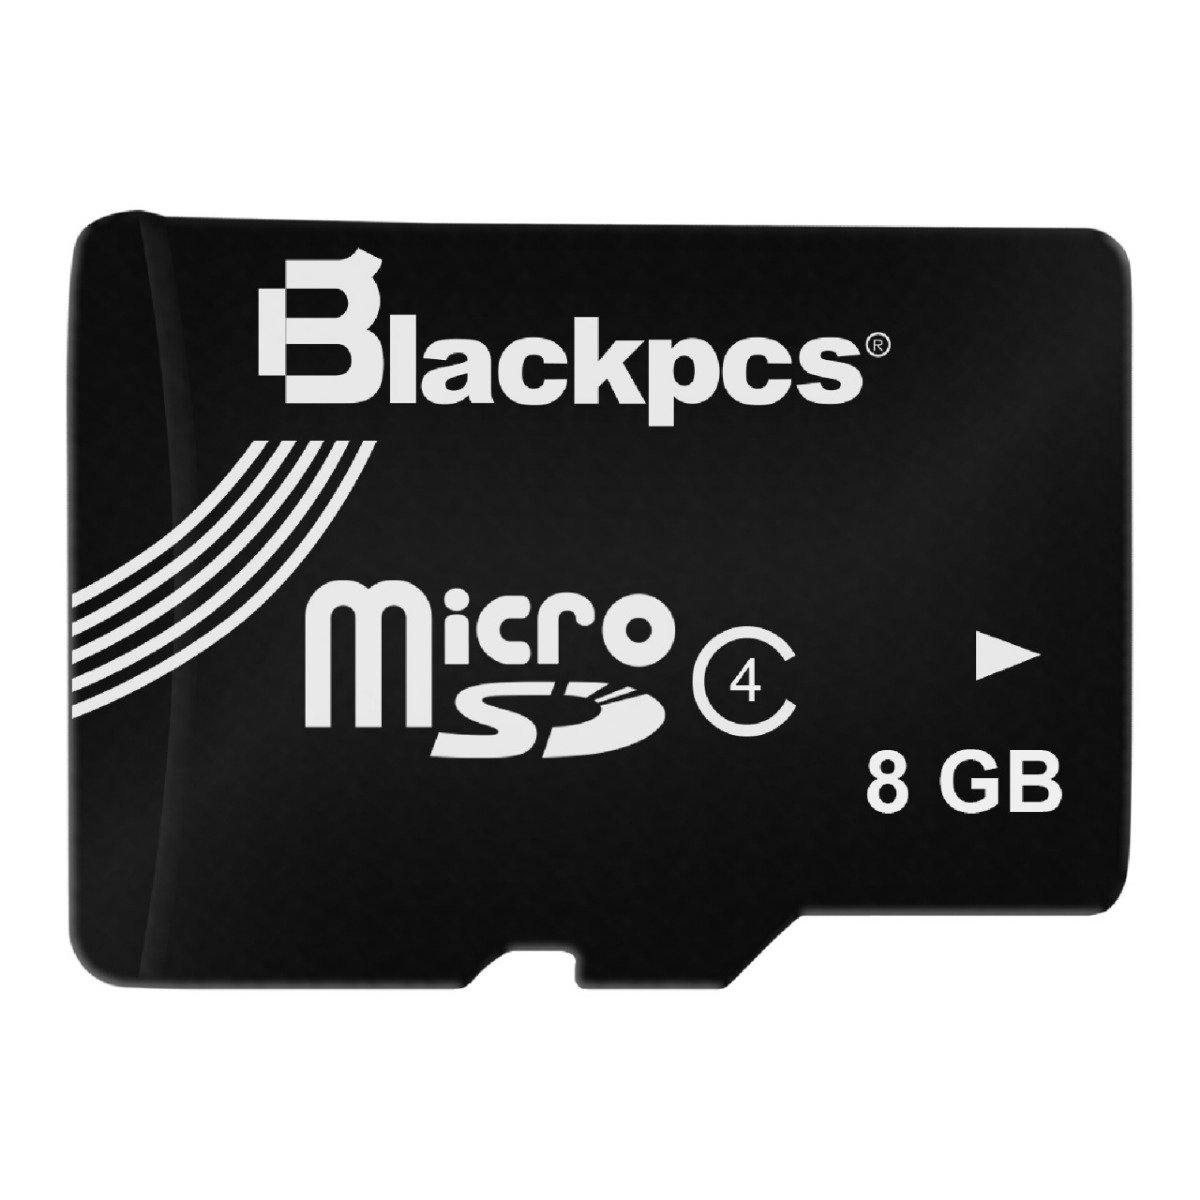 MEMORIA MICRO SD BLACKPCS CL4 8GB C/ADAPTADOR (MM4101A-8) - BLACKPCS